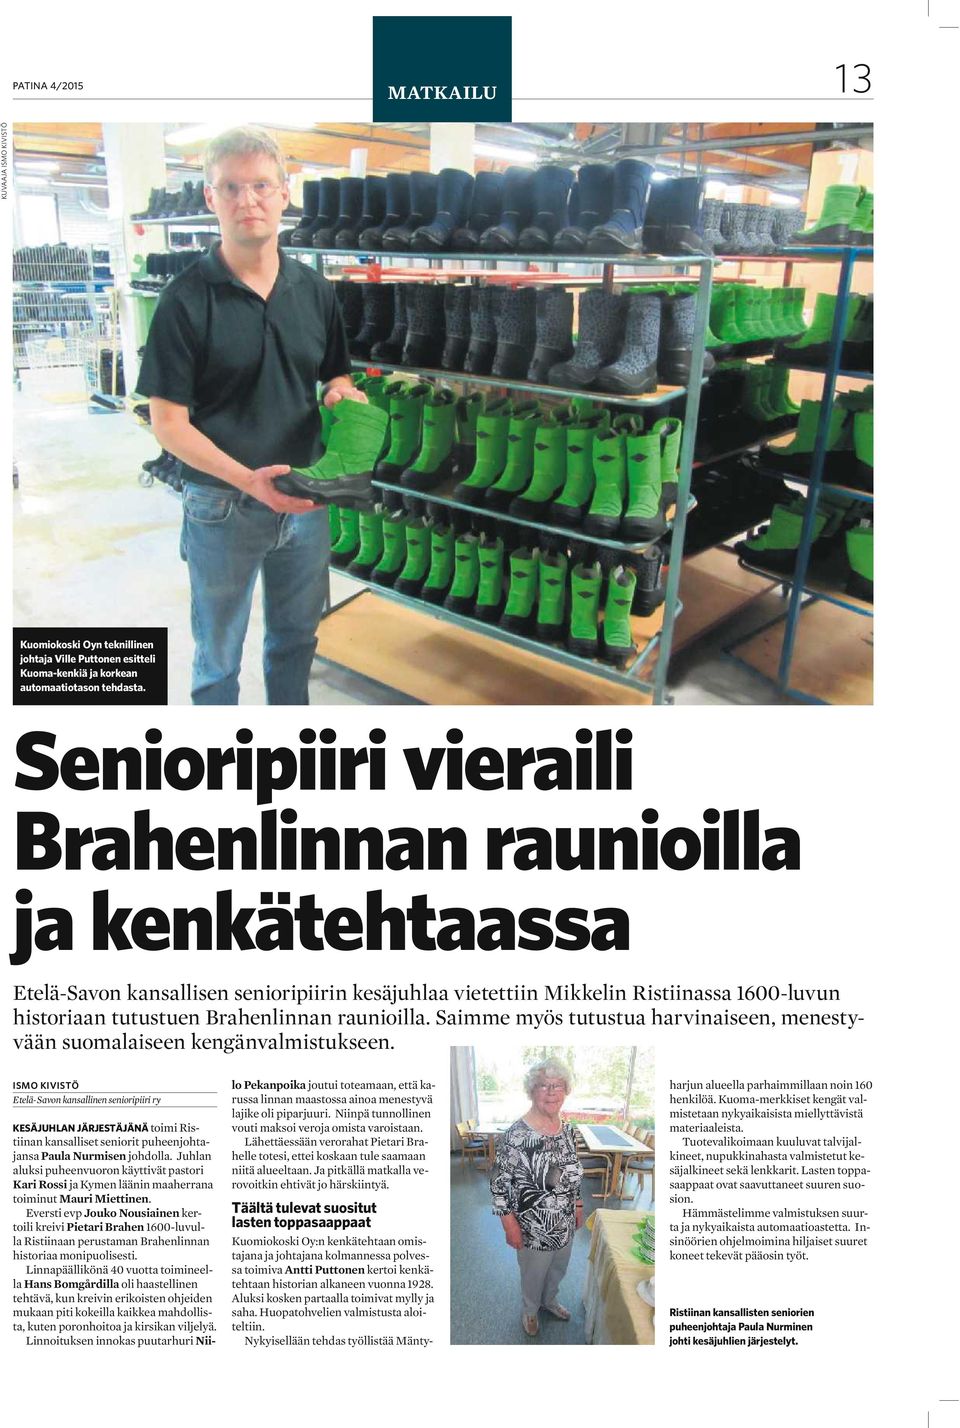 raunioilla. Saimme myös tutustua harvinaiseen, menestyvään suomalaiseen kengänvalmistukseen.